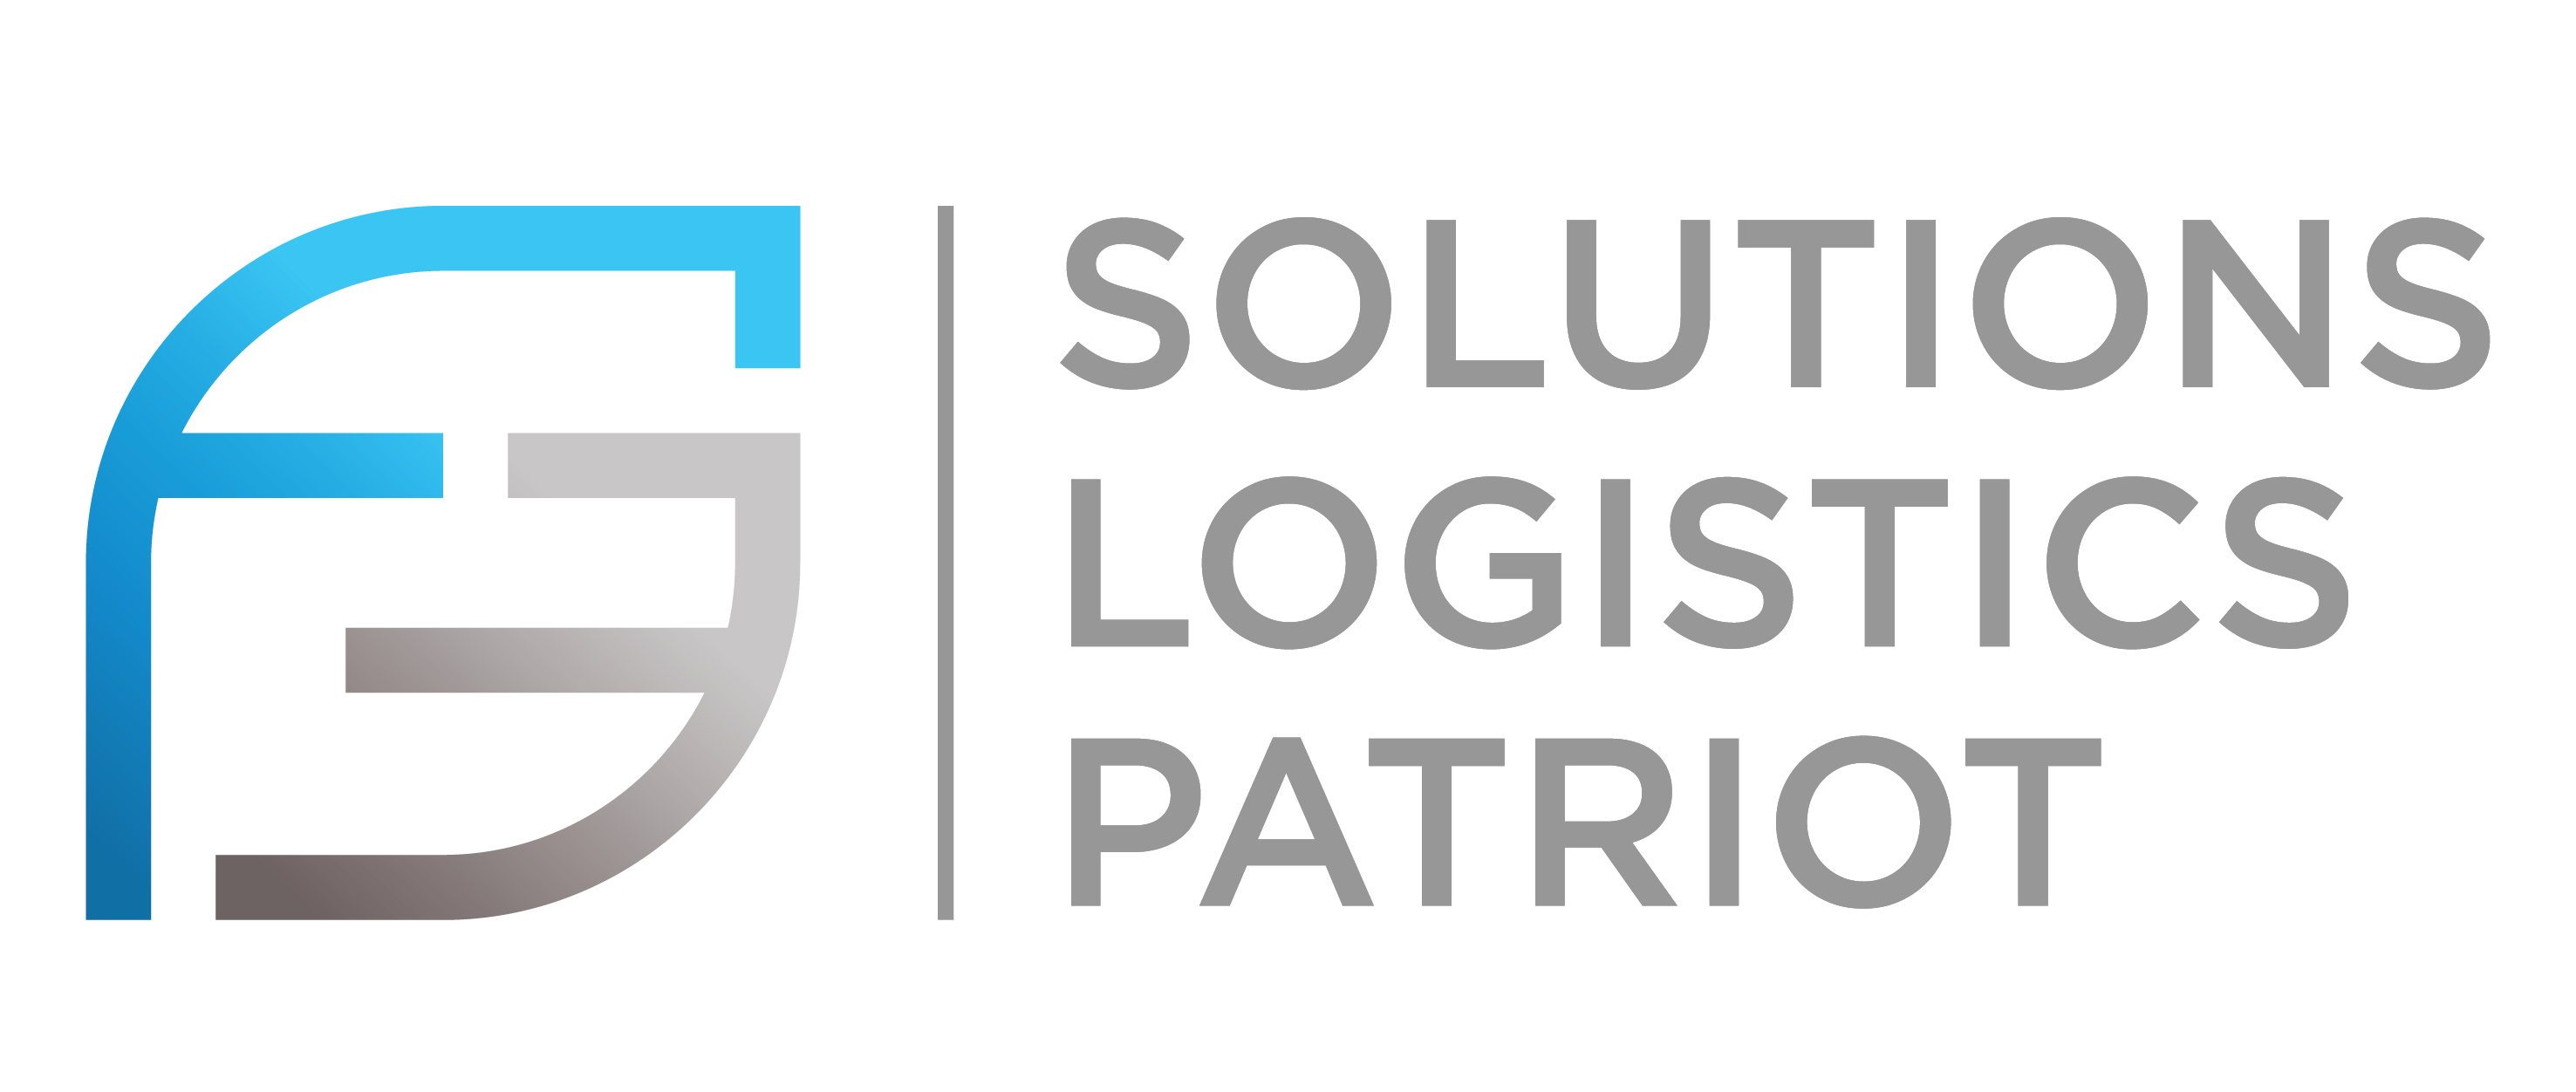 F3 Solutions | Logistics | Patriot